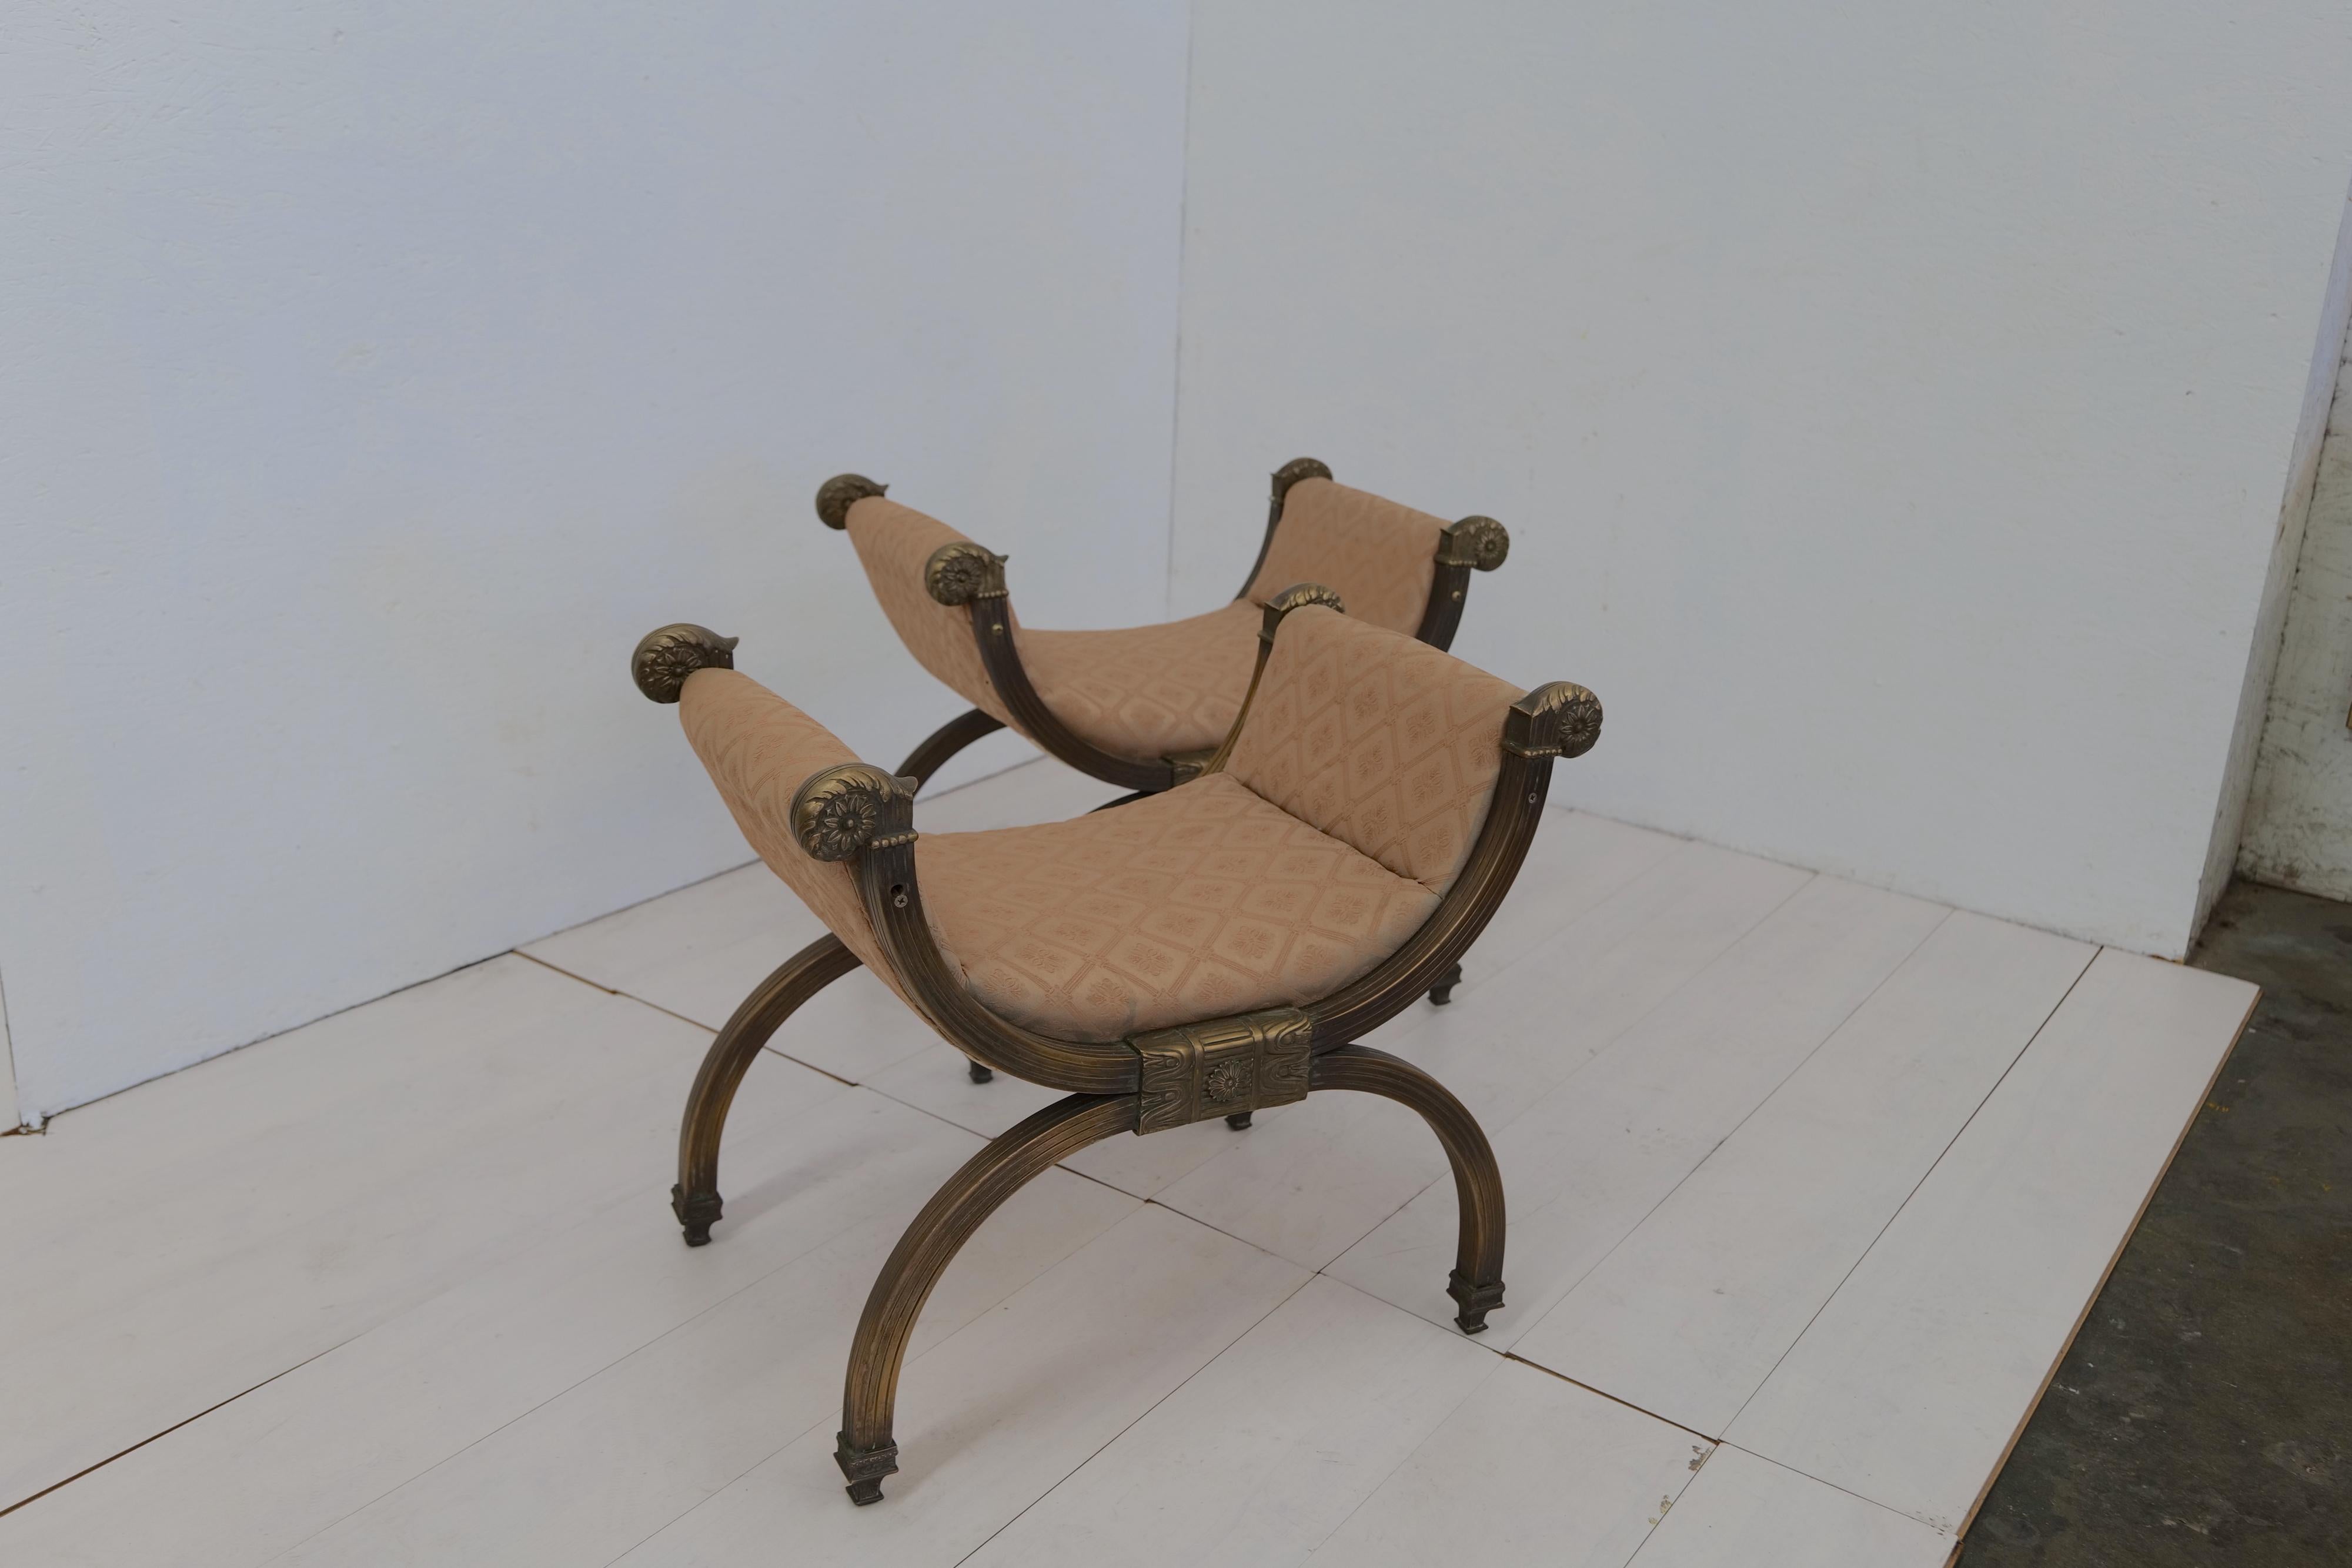 La paire italienne de deux fauteuils baroques, conçue par Carlo X, présente une esthétique saisissante et opulente. Ces fauteuils sont dotés d'une assise sans dossier, ce qui permet un design unique et ouvert. Le cadre entièrement en laiton ajoute